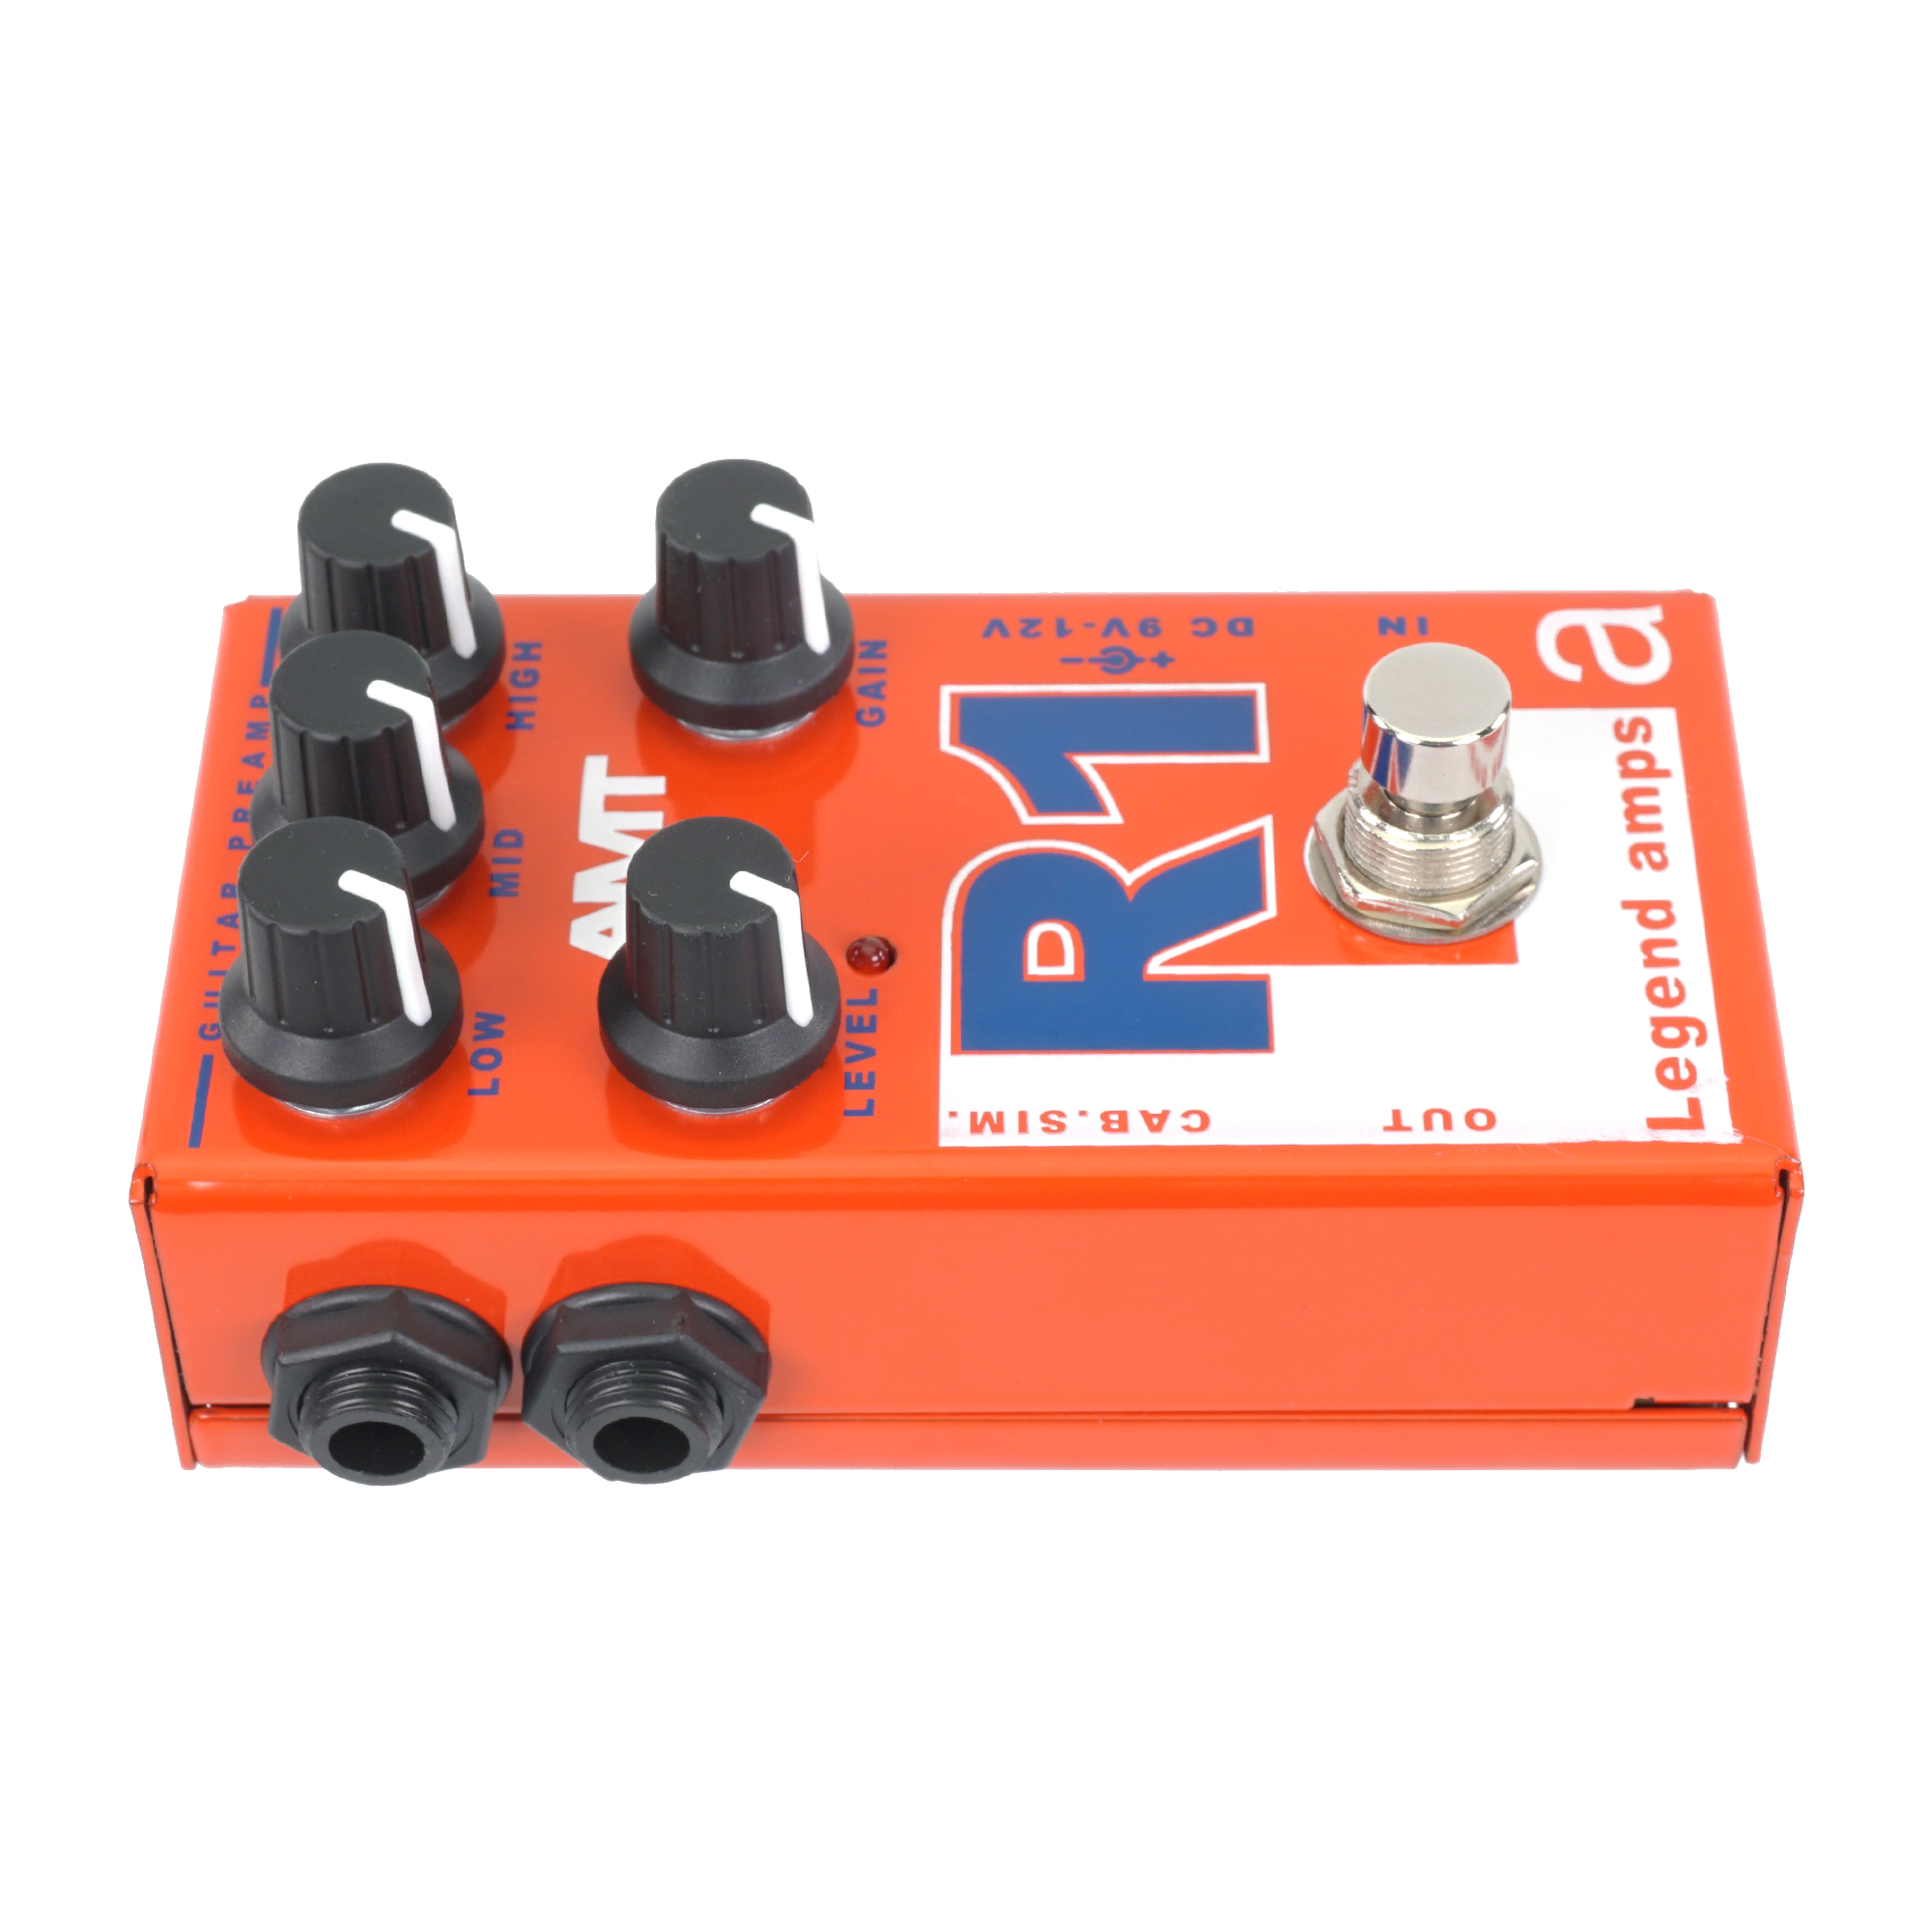 AMT R1 / Mesa Boogie Rectifier タイプ プリアンプ